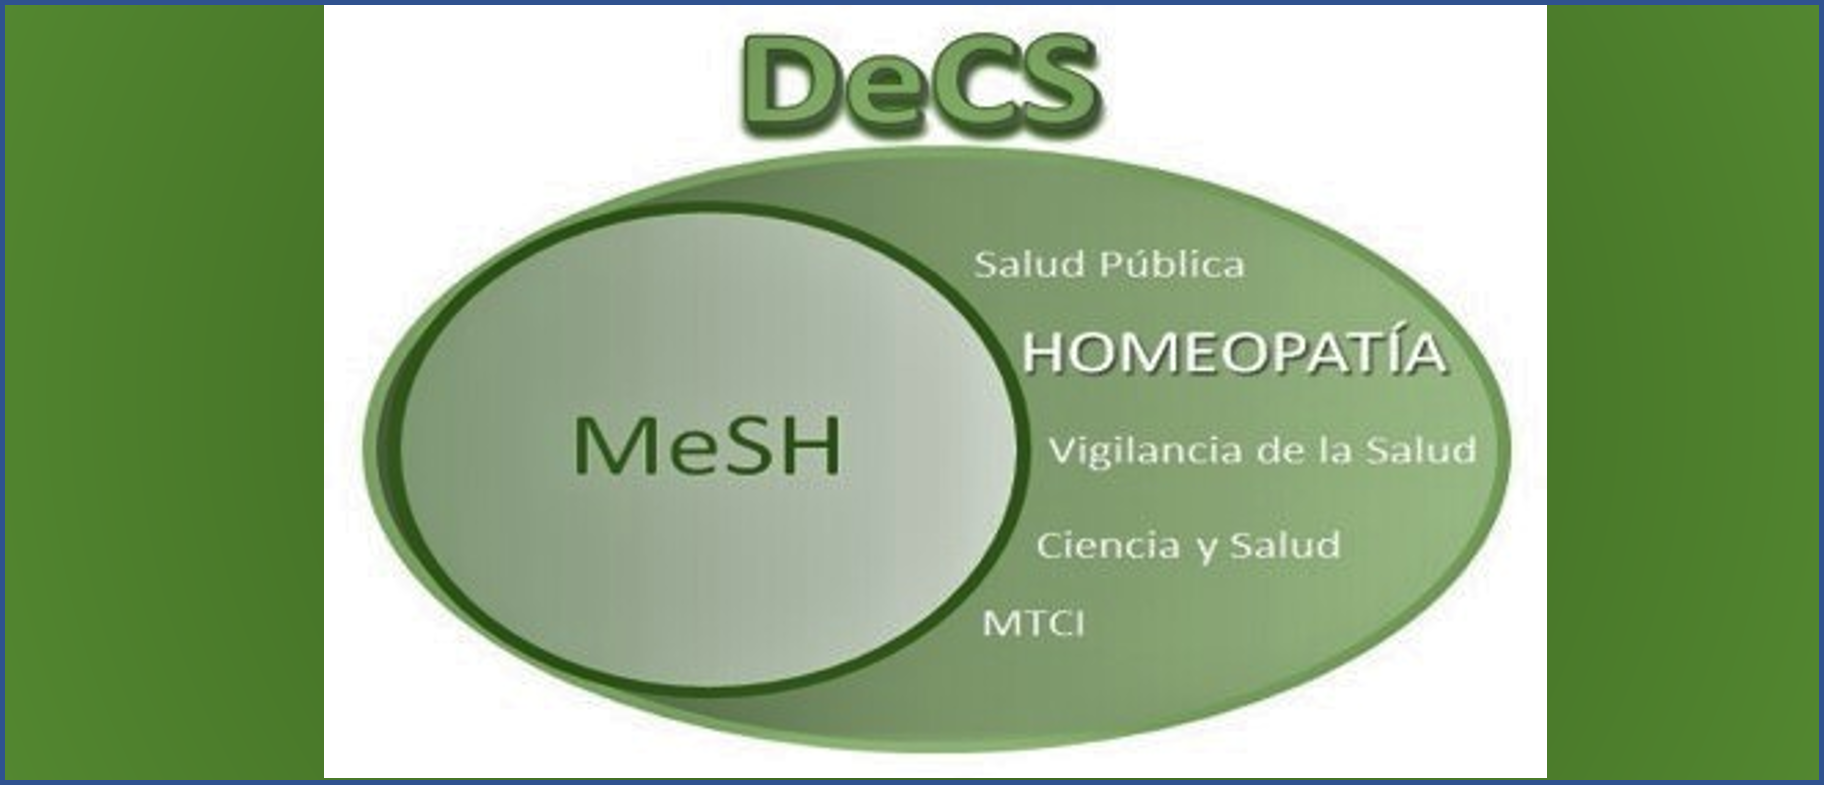 se-actualiza-la-categoria-homeopatia-del-decs